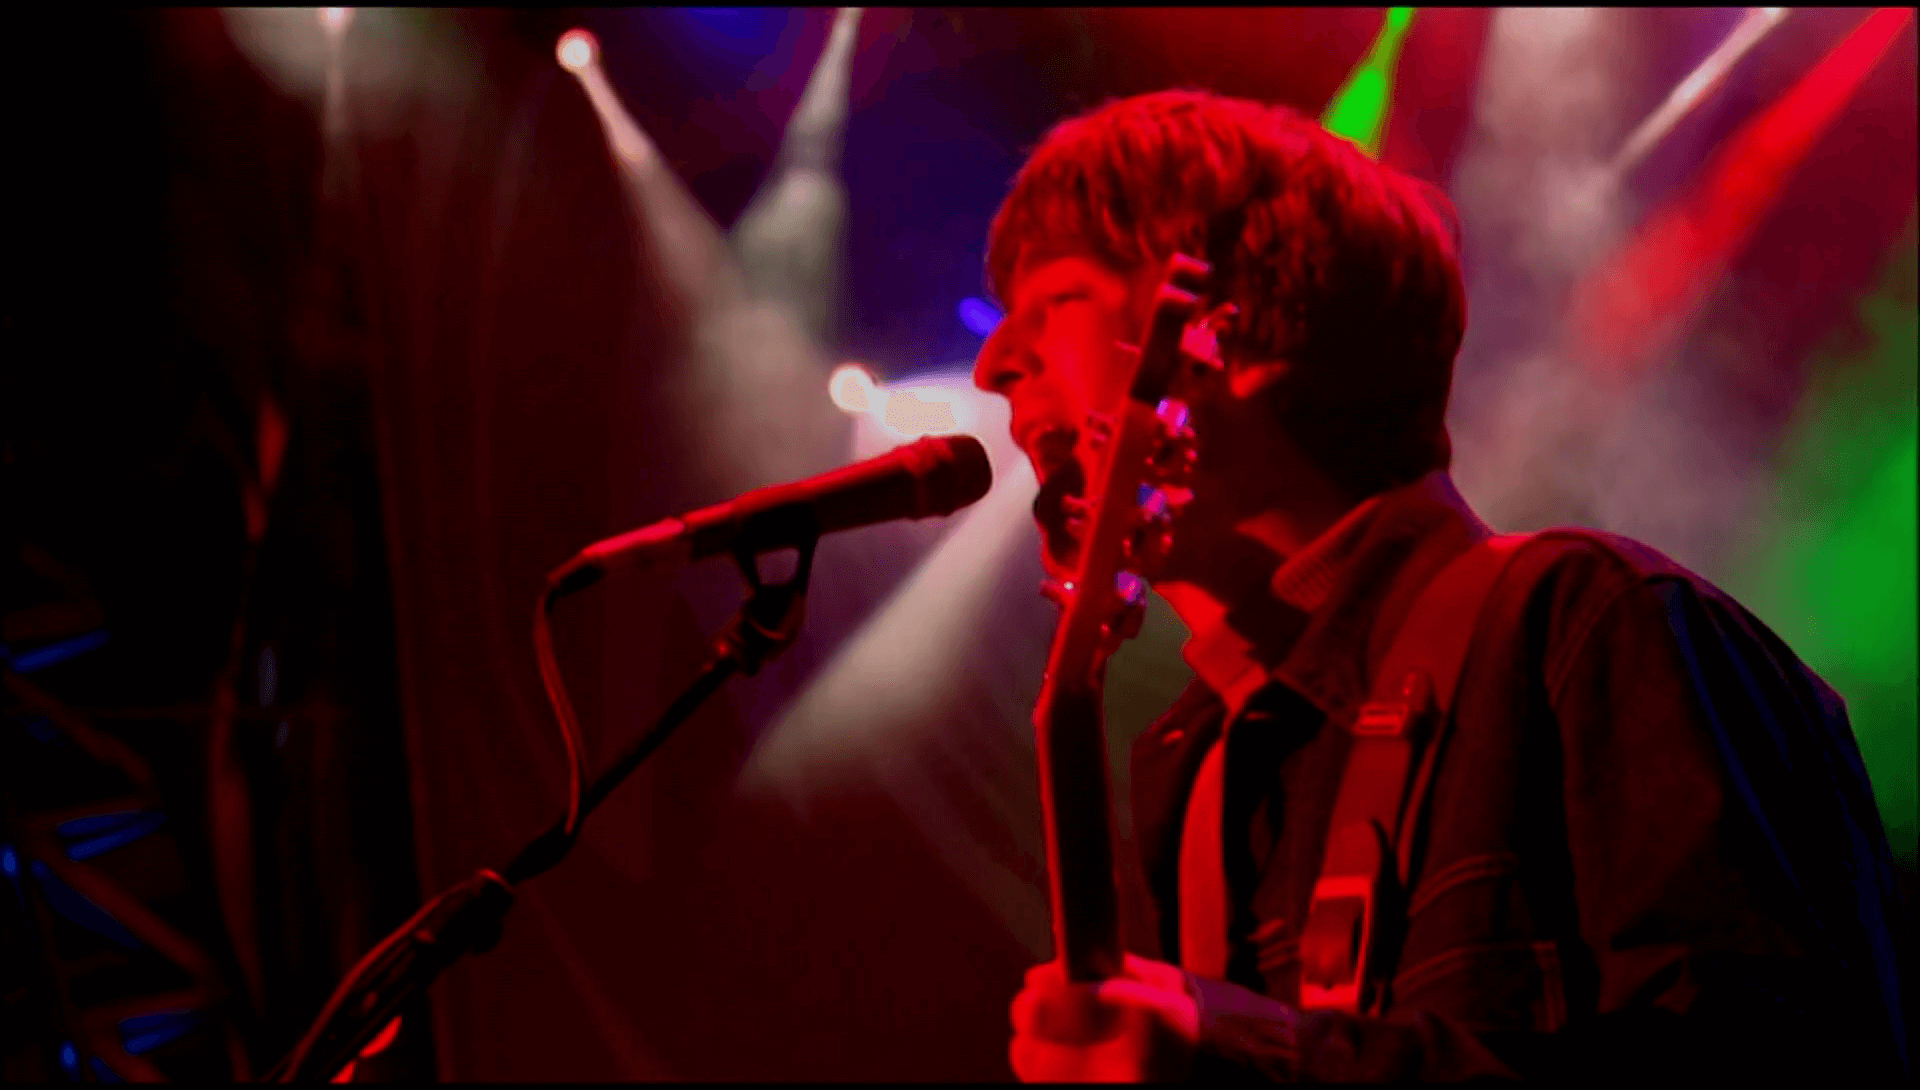 Oasis at Knebworth Park; Stevenage, Hertfordshire, England - August 11, 1996